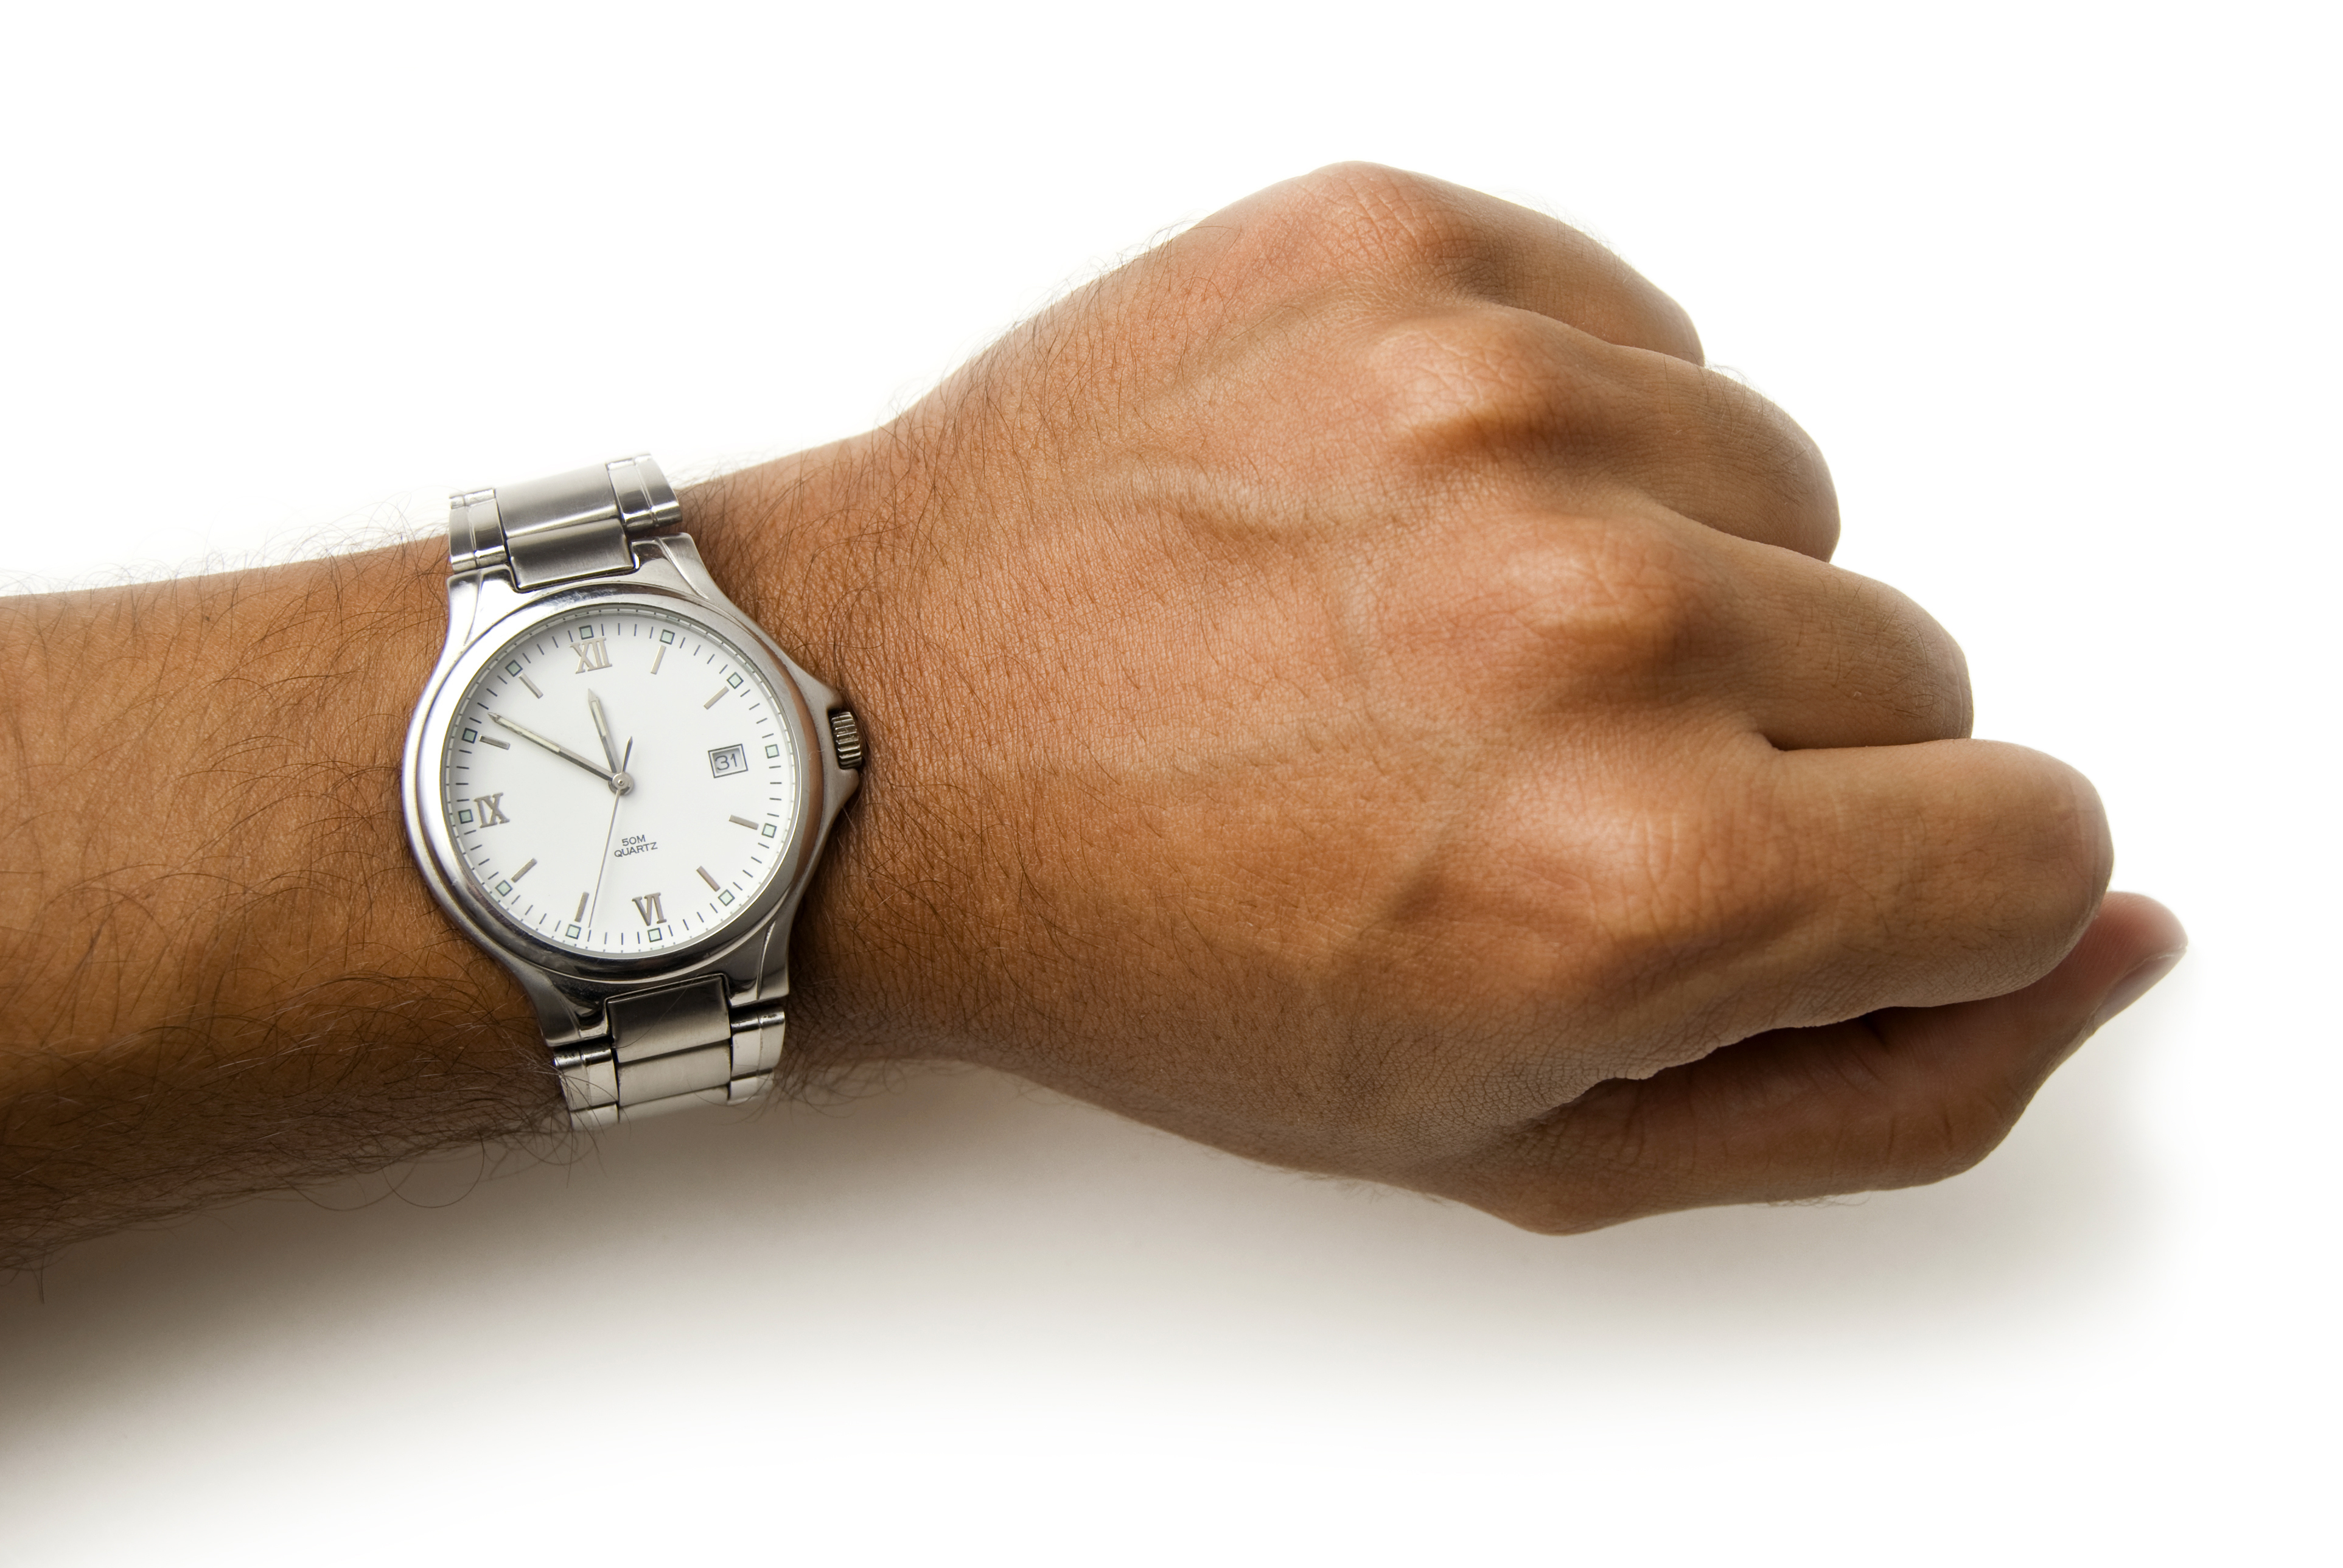 wrist with a watch